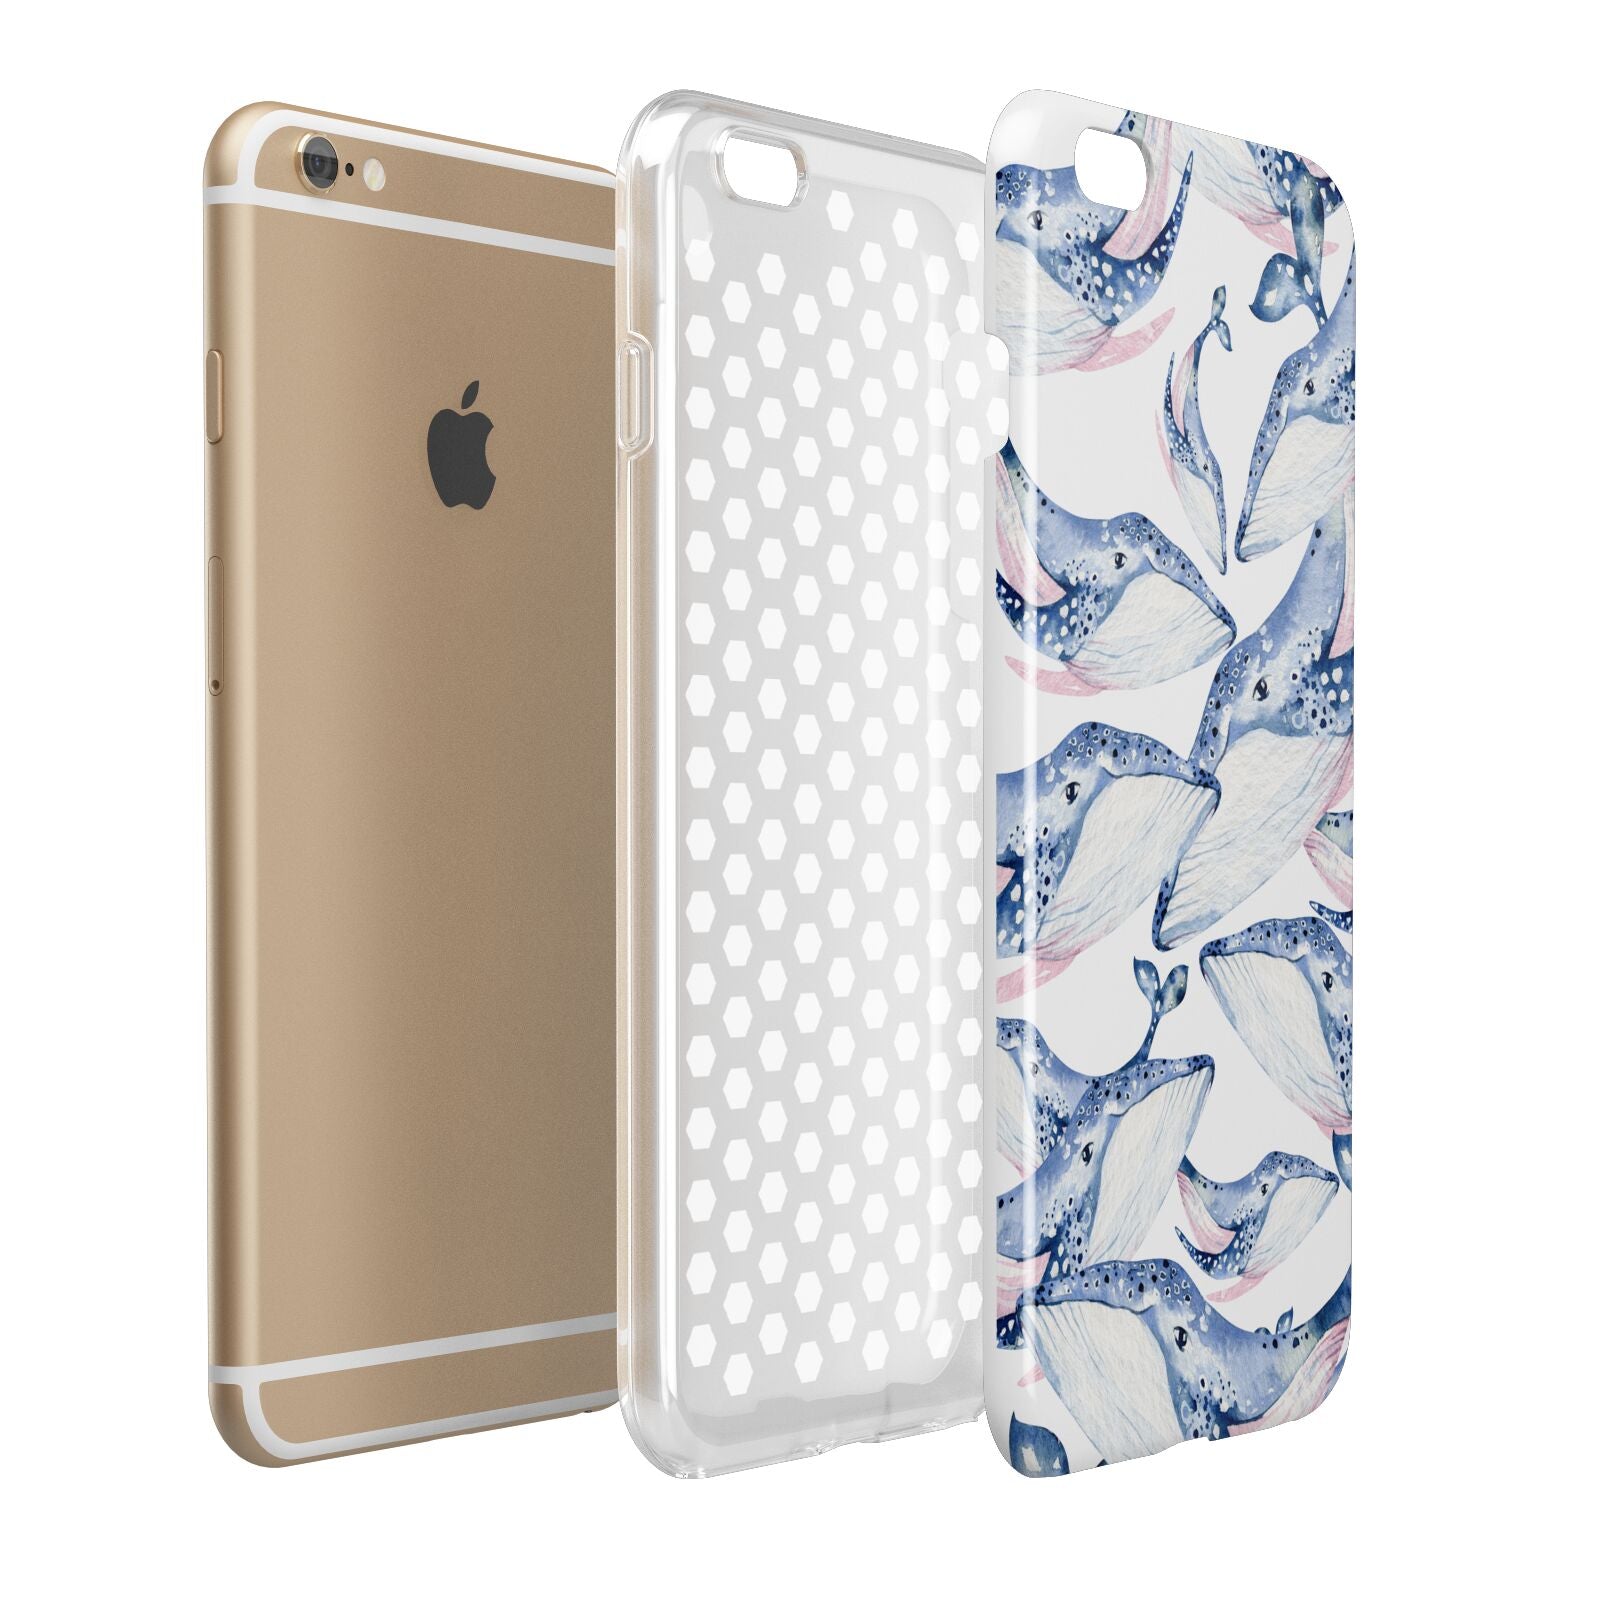 Whale Apple iPhone 6 Plus 3D Tough Case Expand Detail Image